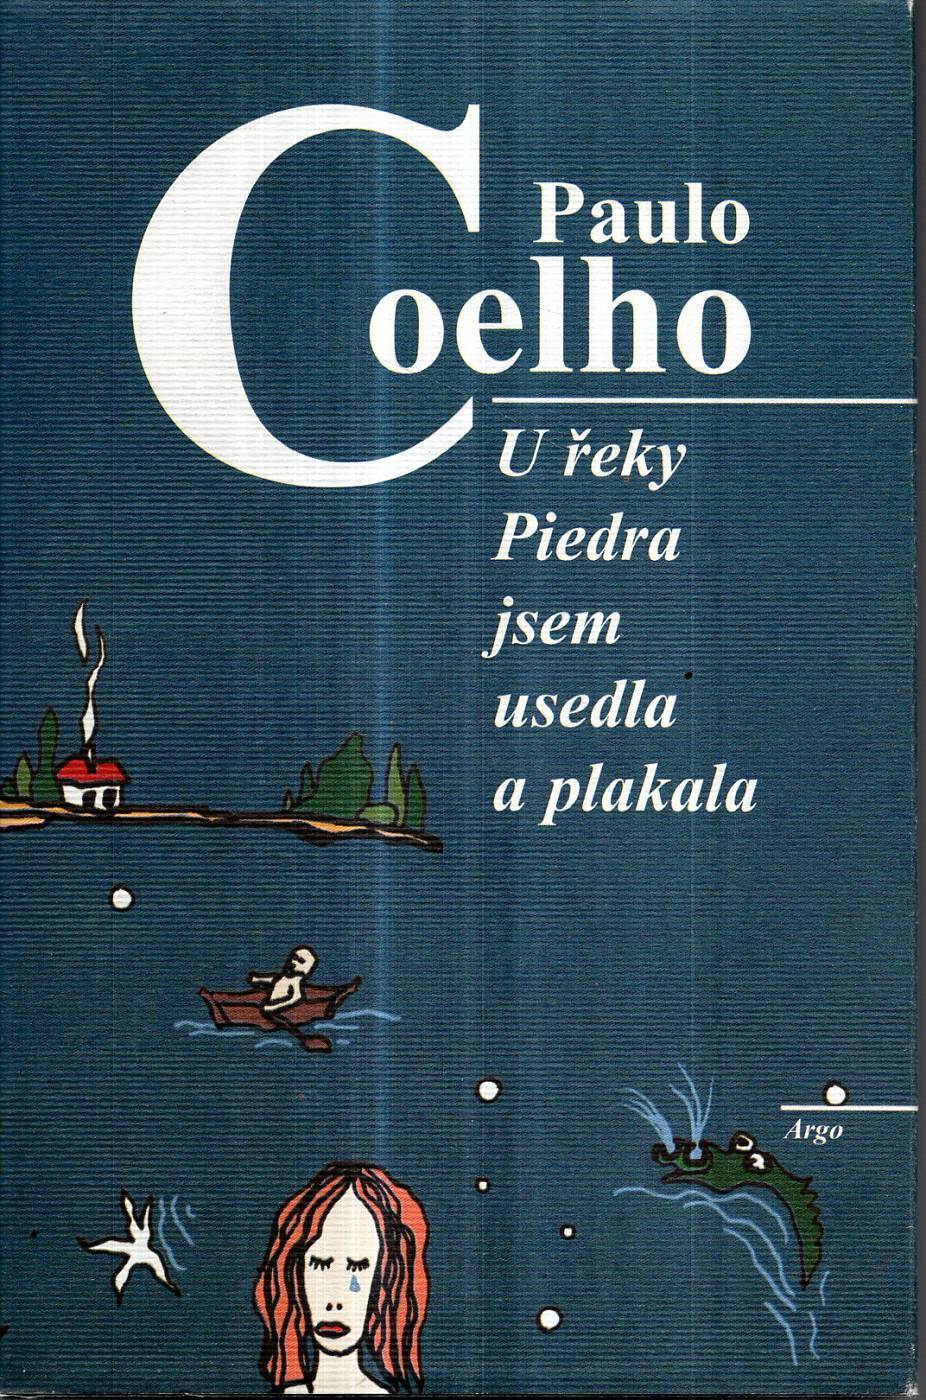 Coelho, Paulo – U řeky Piedra jsem usedla a plakala 